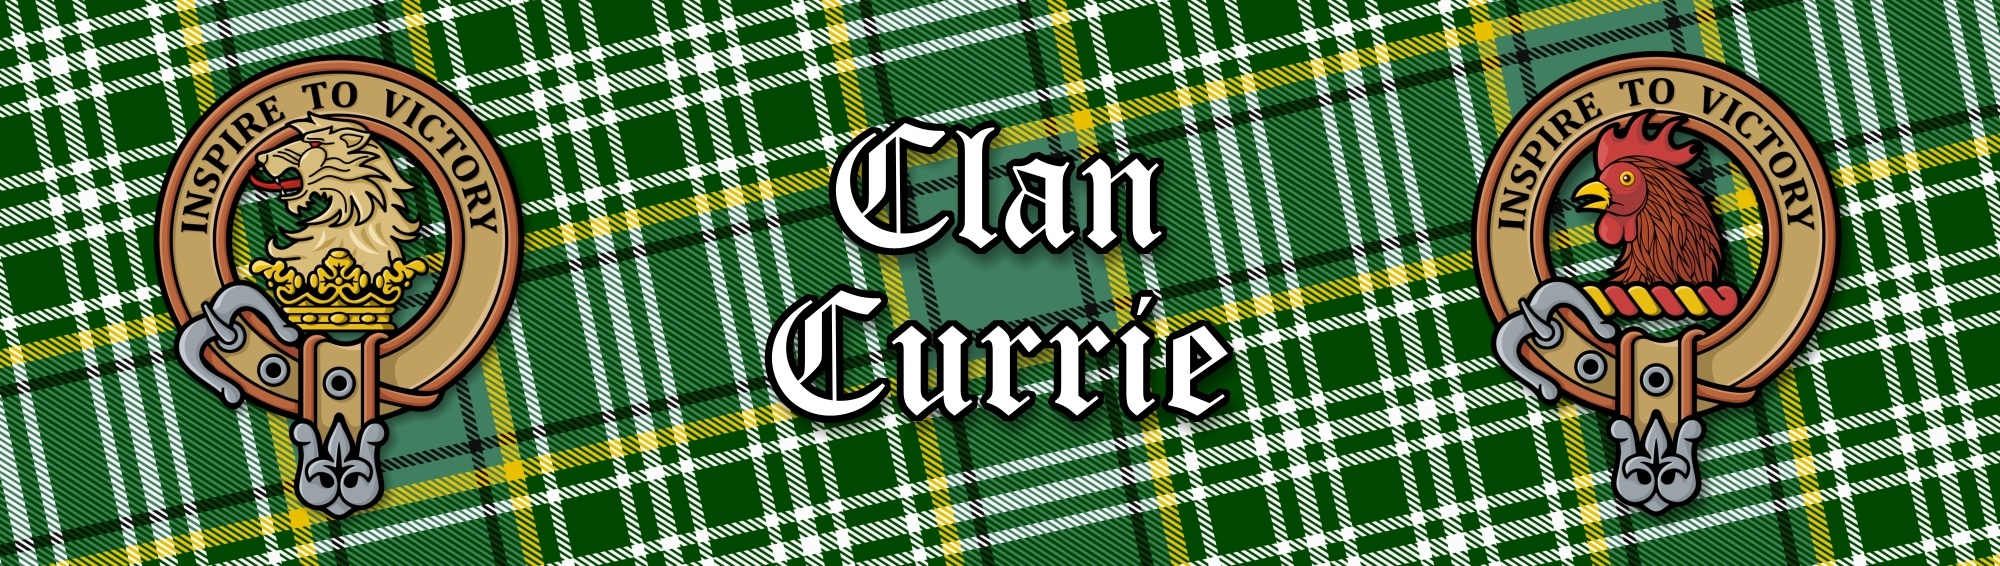 Clan Oliphant Tartan Collection